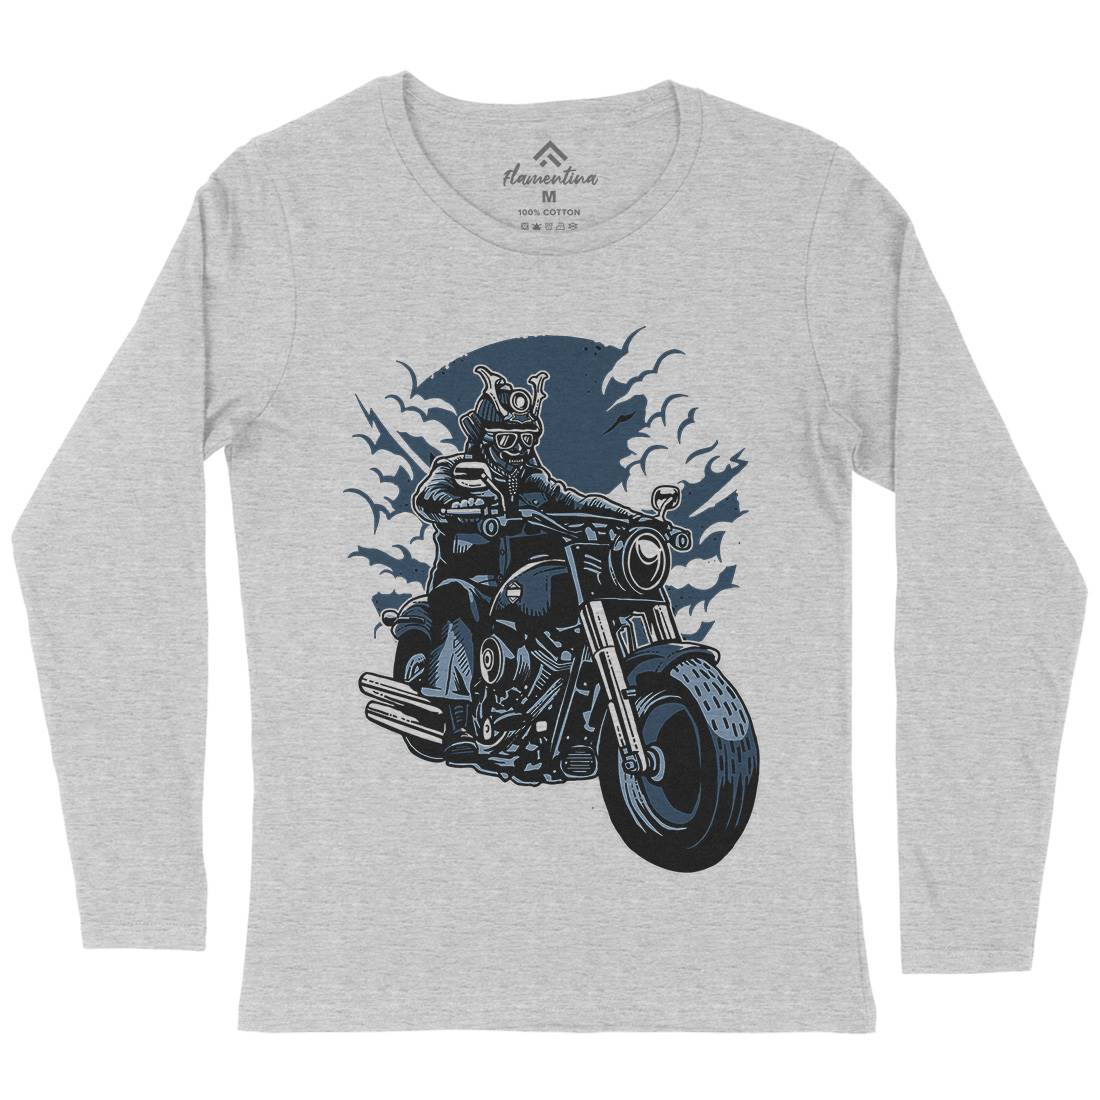 Samurai Ride Womens Long Sleeve T-Shirt Warriors A568